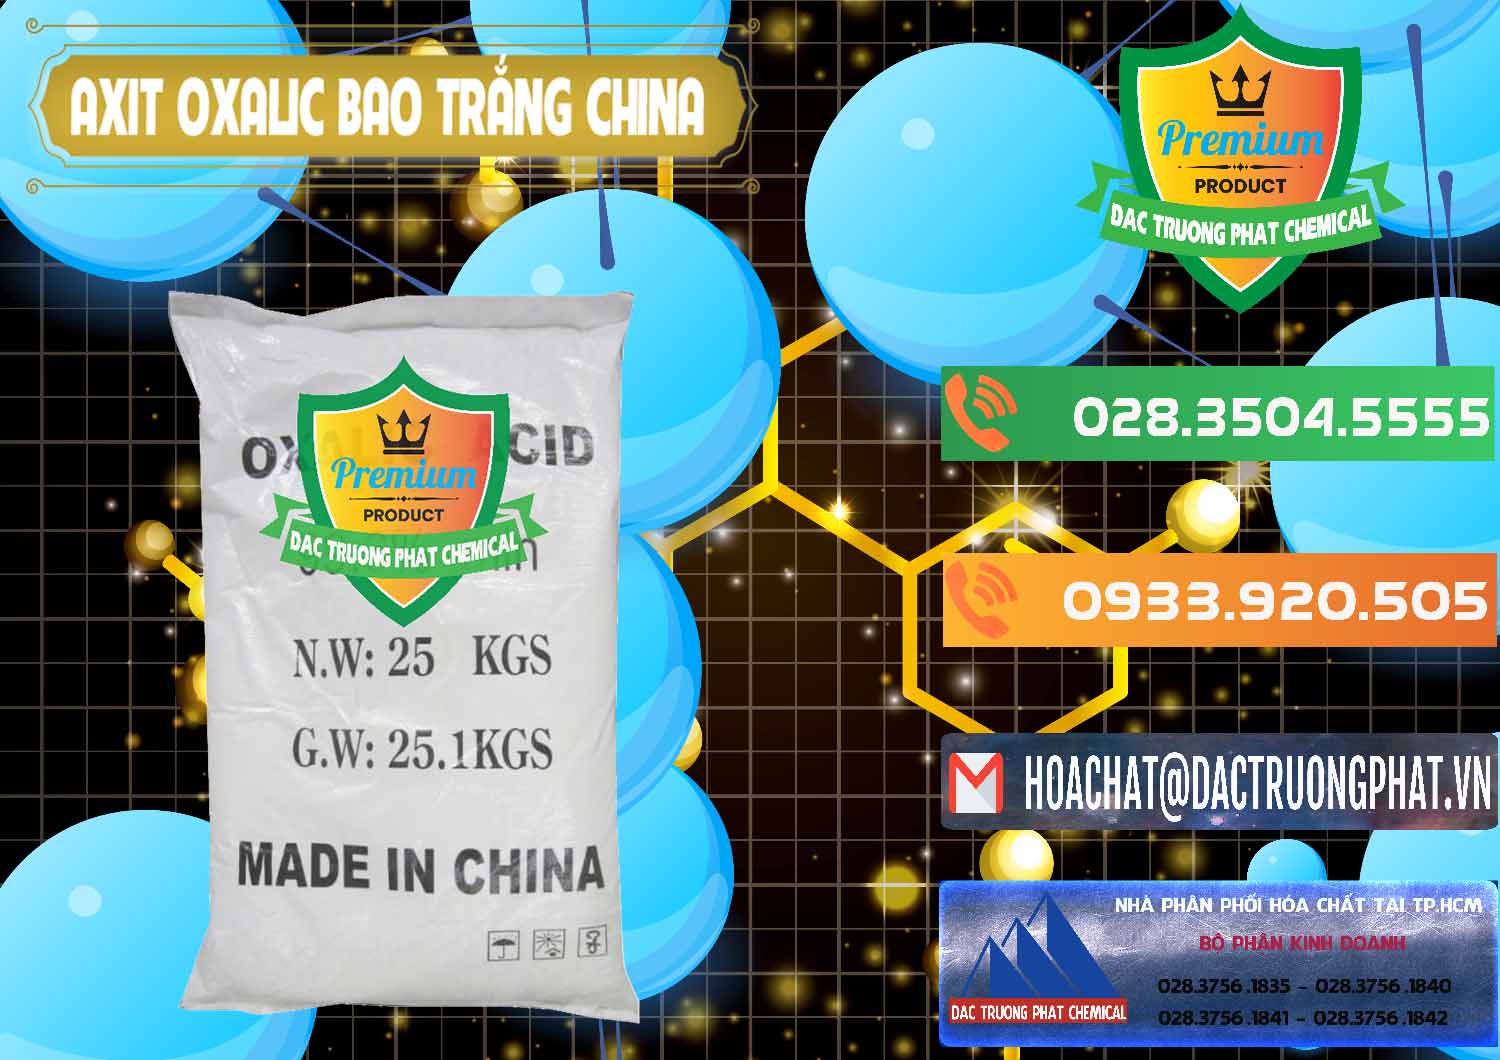 Cty chuyên phân phối - bán Acid Oxalic – Axit Oxalic 99.6% Bao Trắng Trung Quốc China - 0270 - Nhập khẩu và cung cấp hóa chất tại TP.HCM - hoachatxulynuoc.com.vn